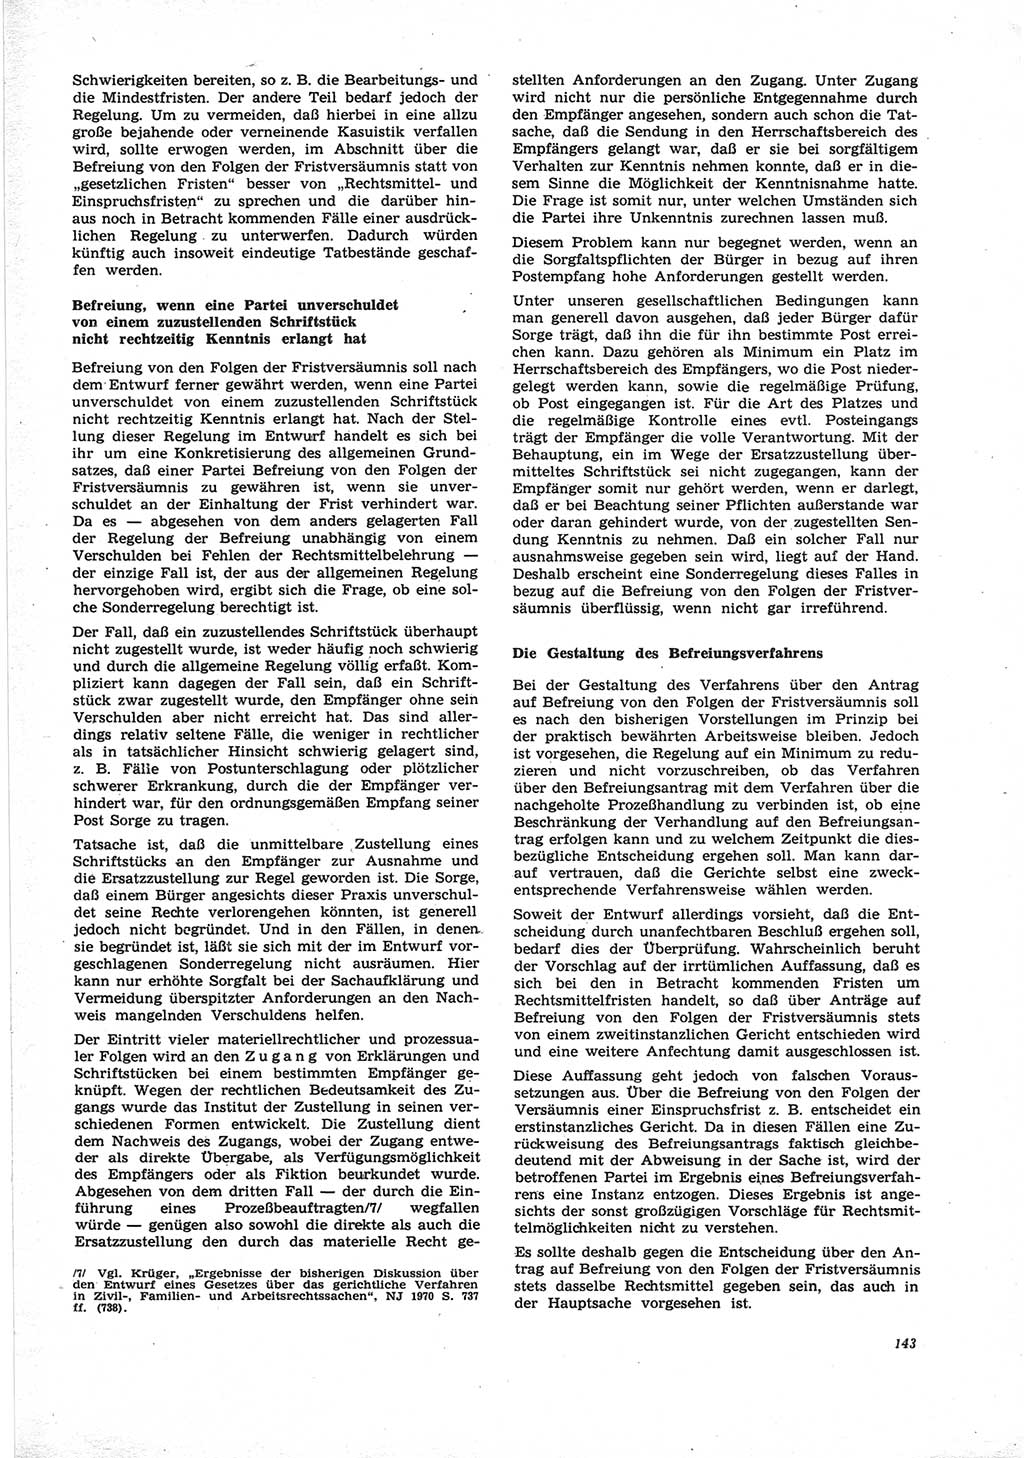 Neue Justiz (NJ), Zeitschrift für Recht und Rechtswissenschaft [Deutsche Demokratische Republik (DDR)], 25. Jahrgang 1971, Seite 143 (NJ DDR 1971, S. 143)